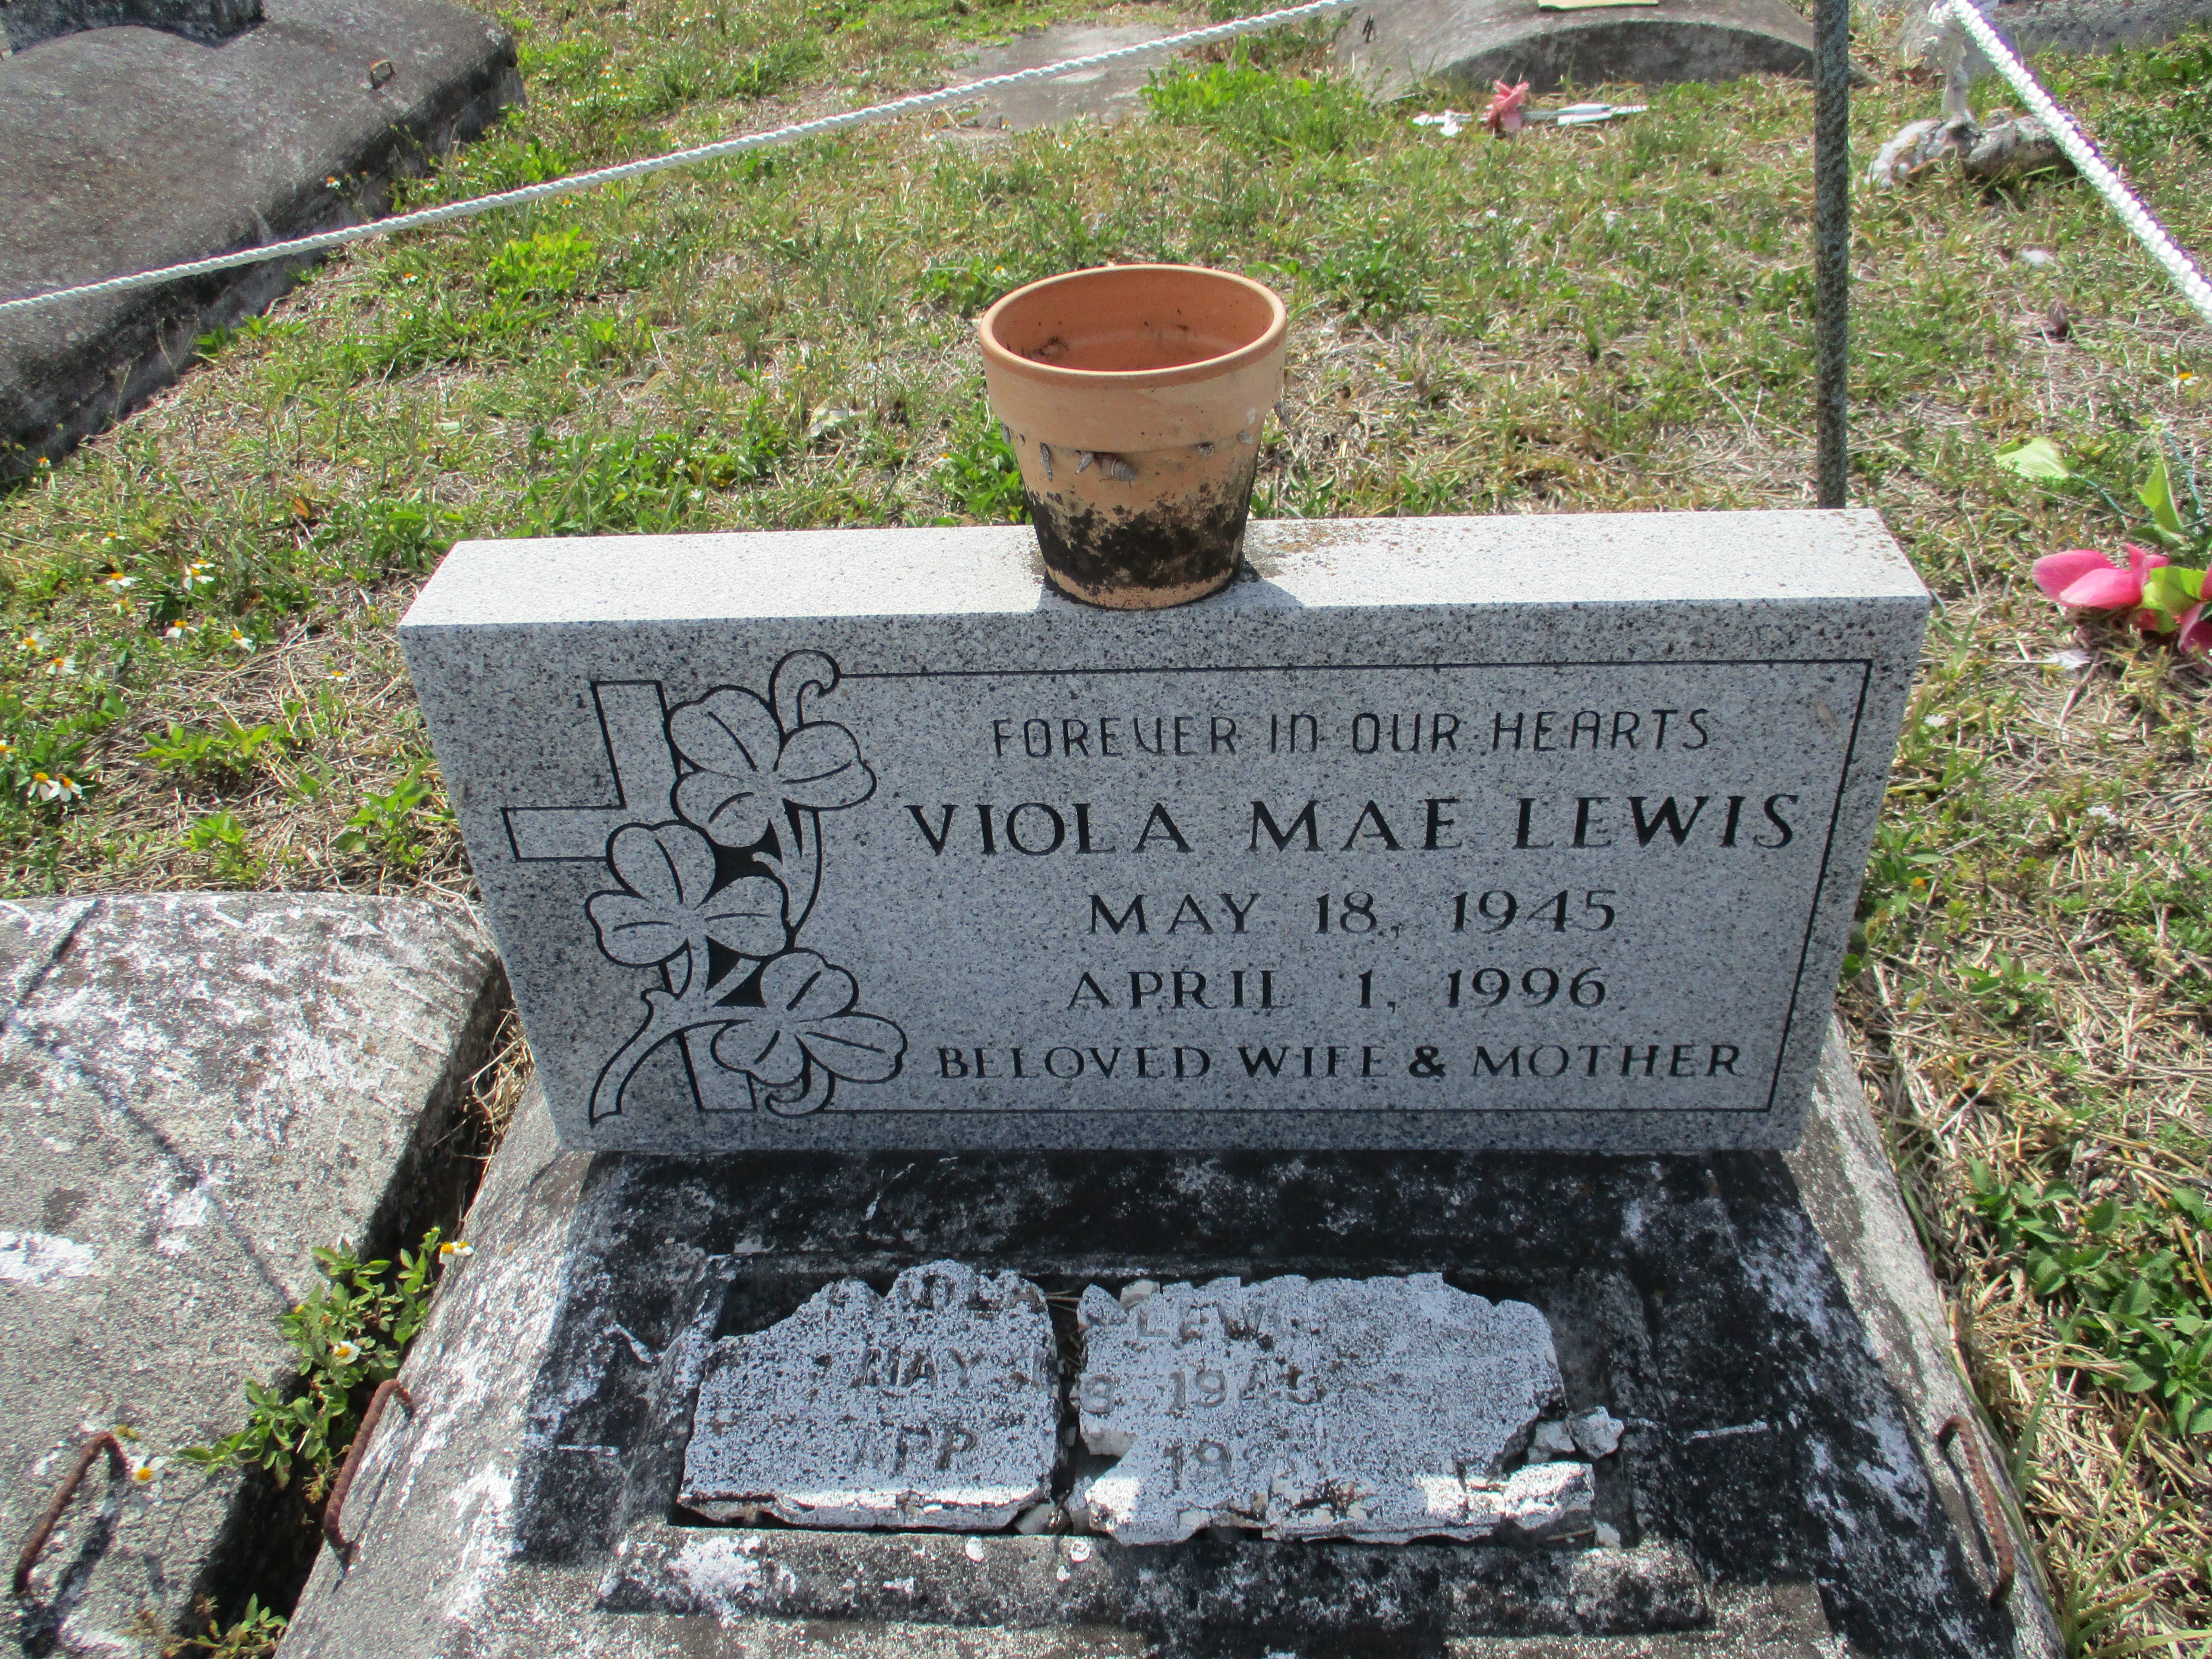 Viola Mae Lewis